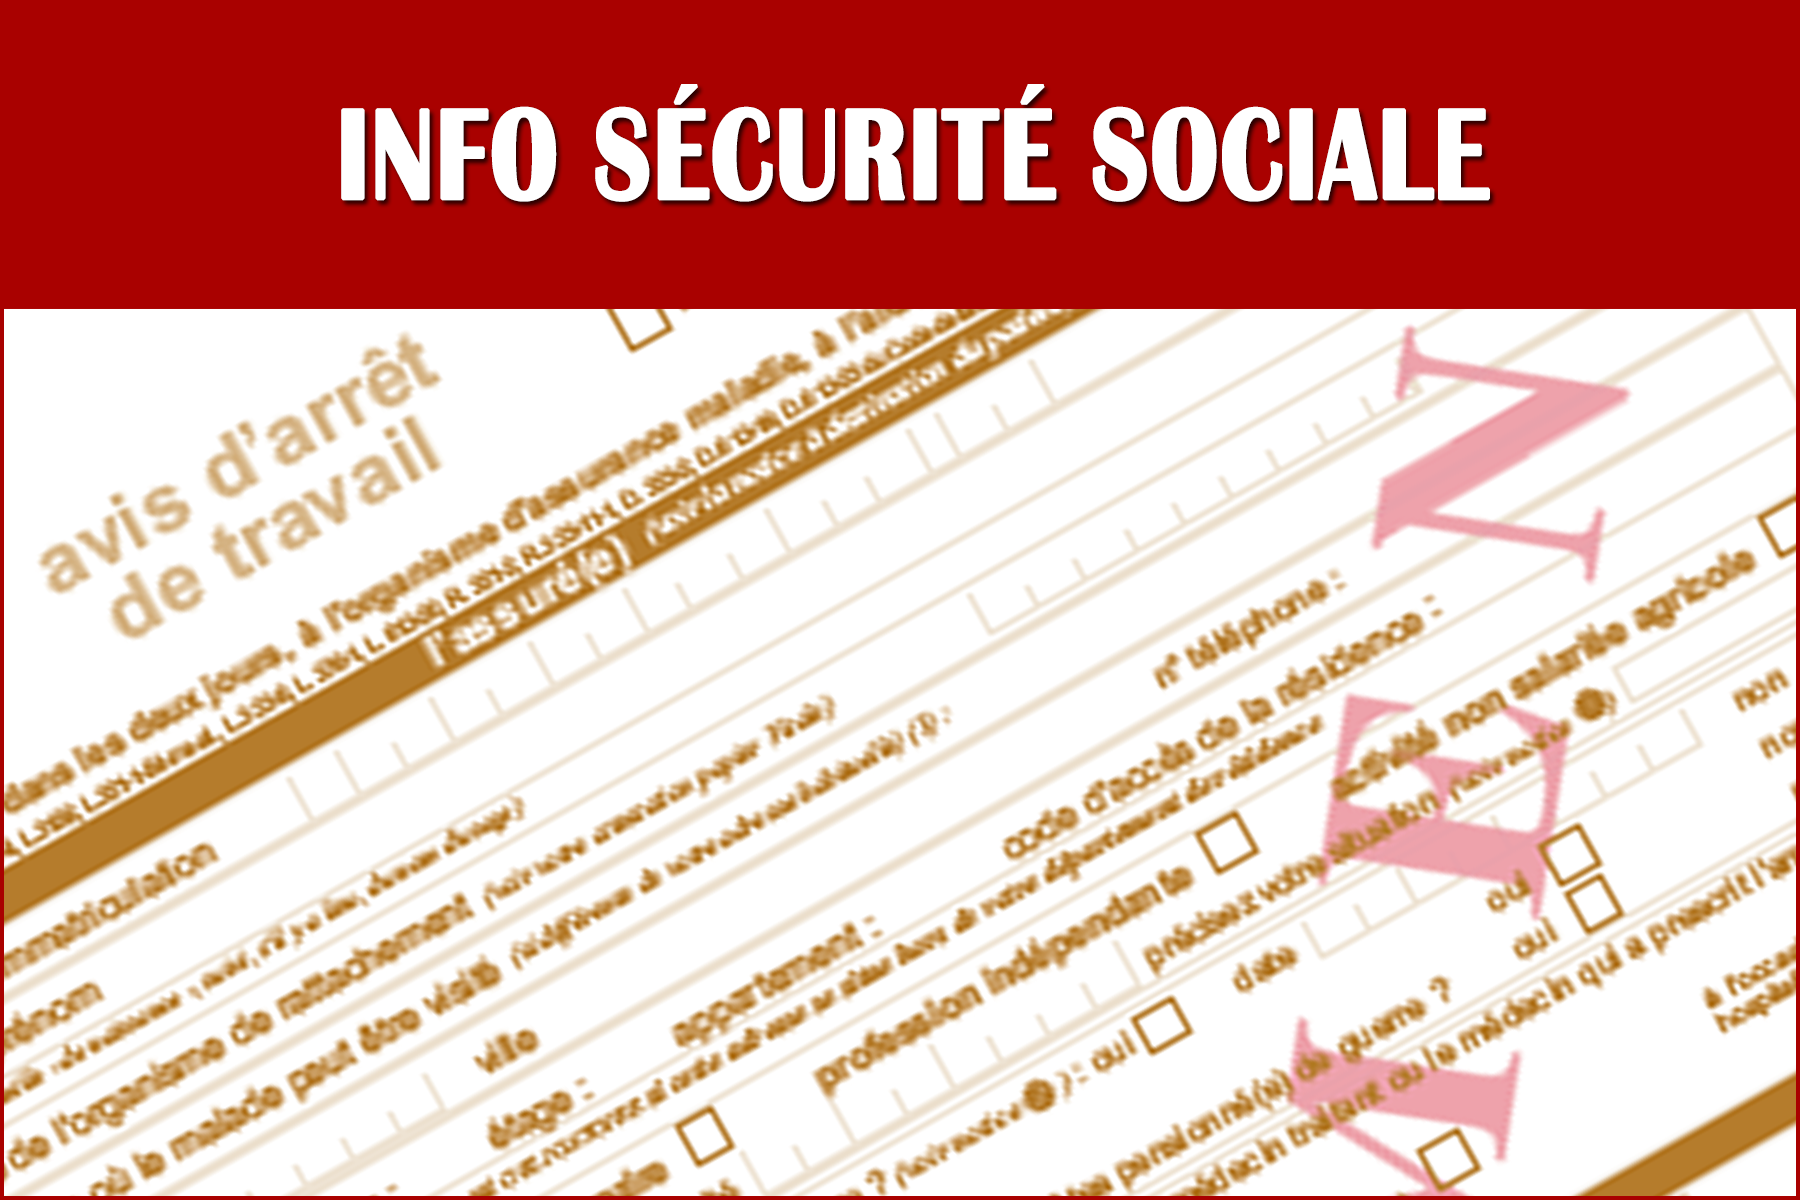 Info-Securite-Sociale-Cerfa-Arret-Travail